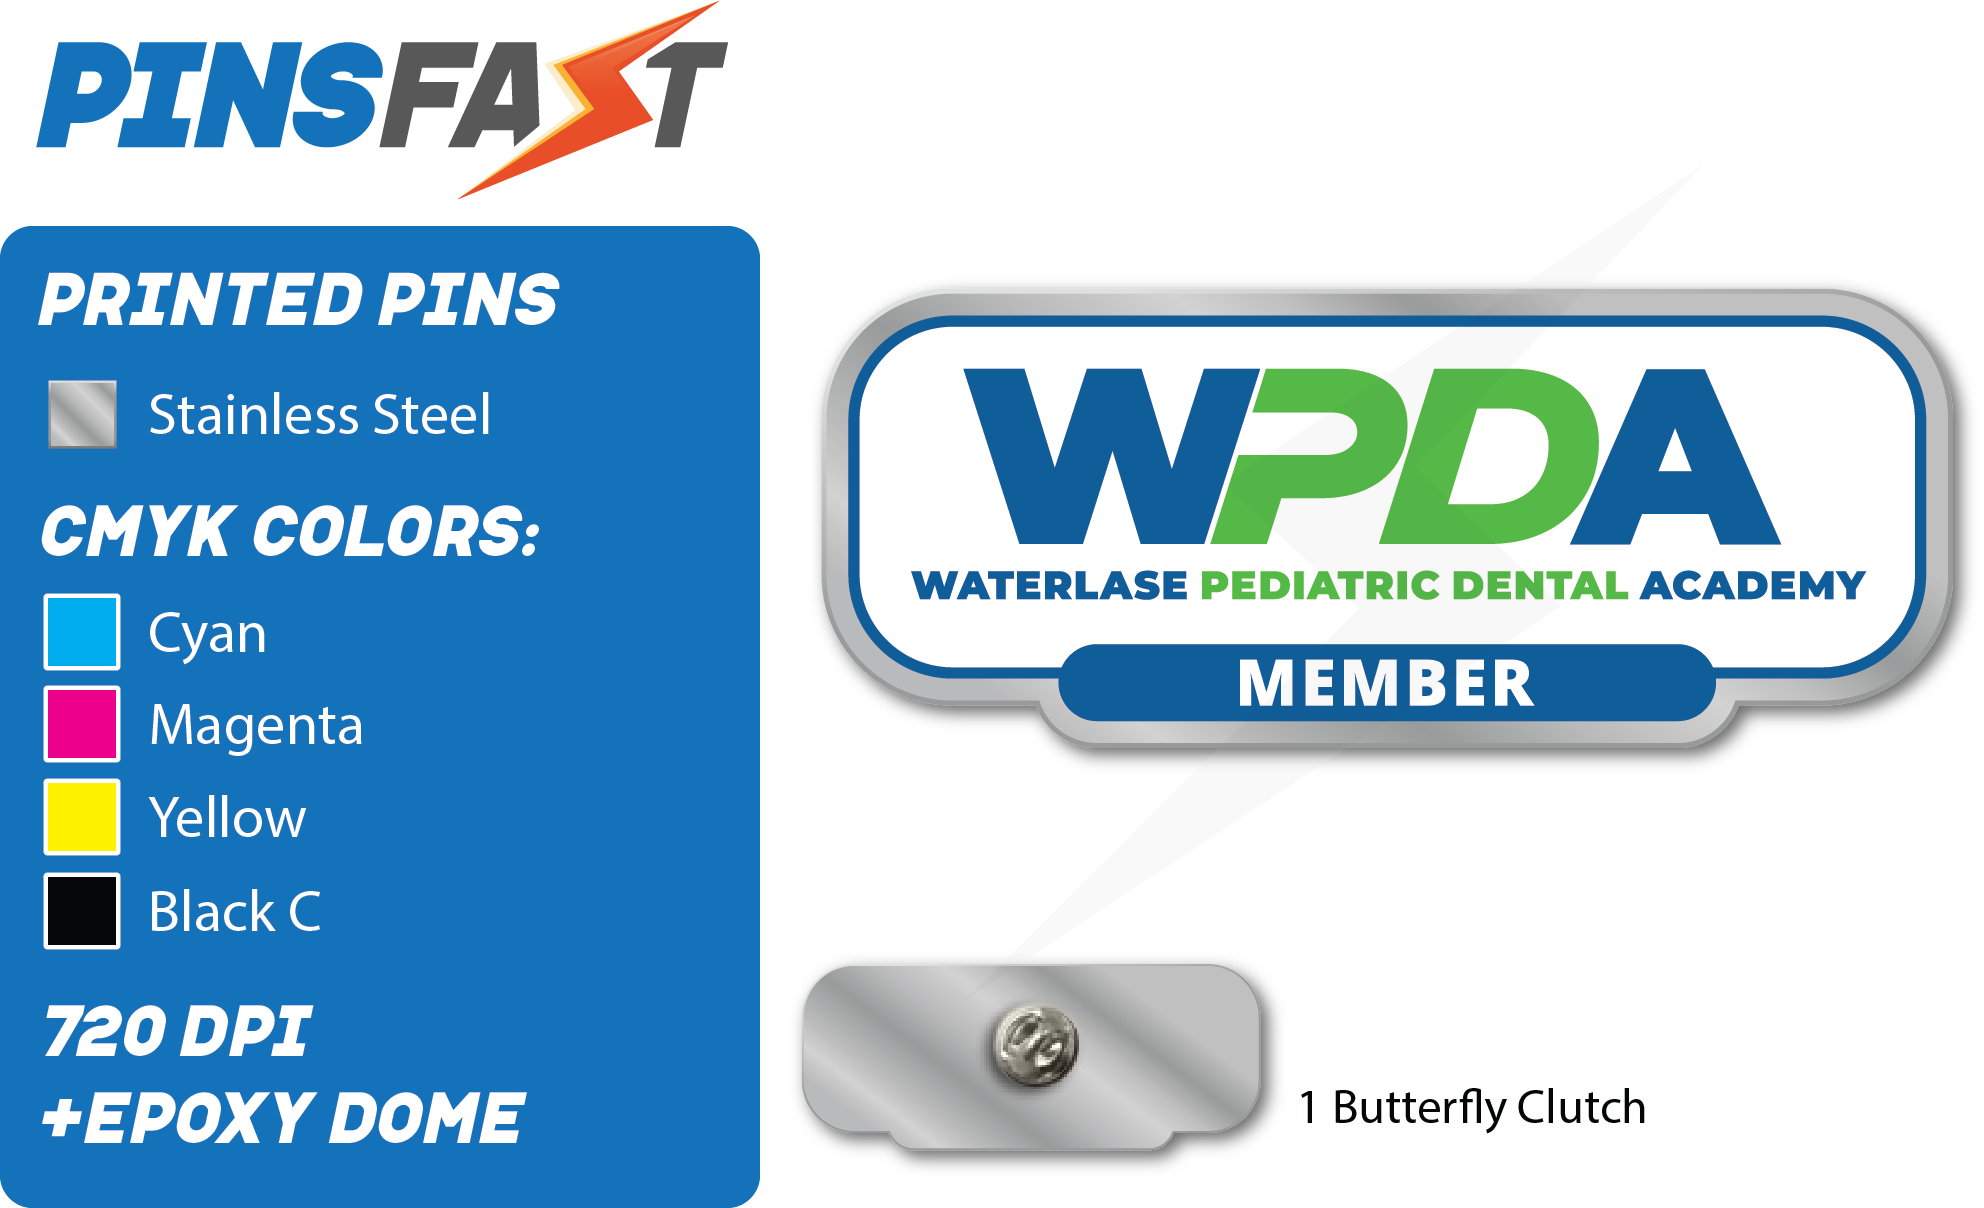 WPDA Member pins